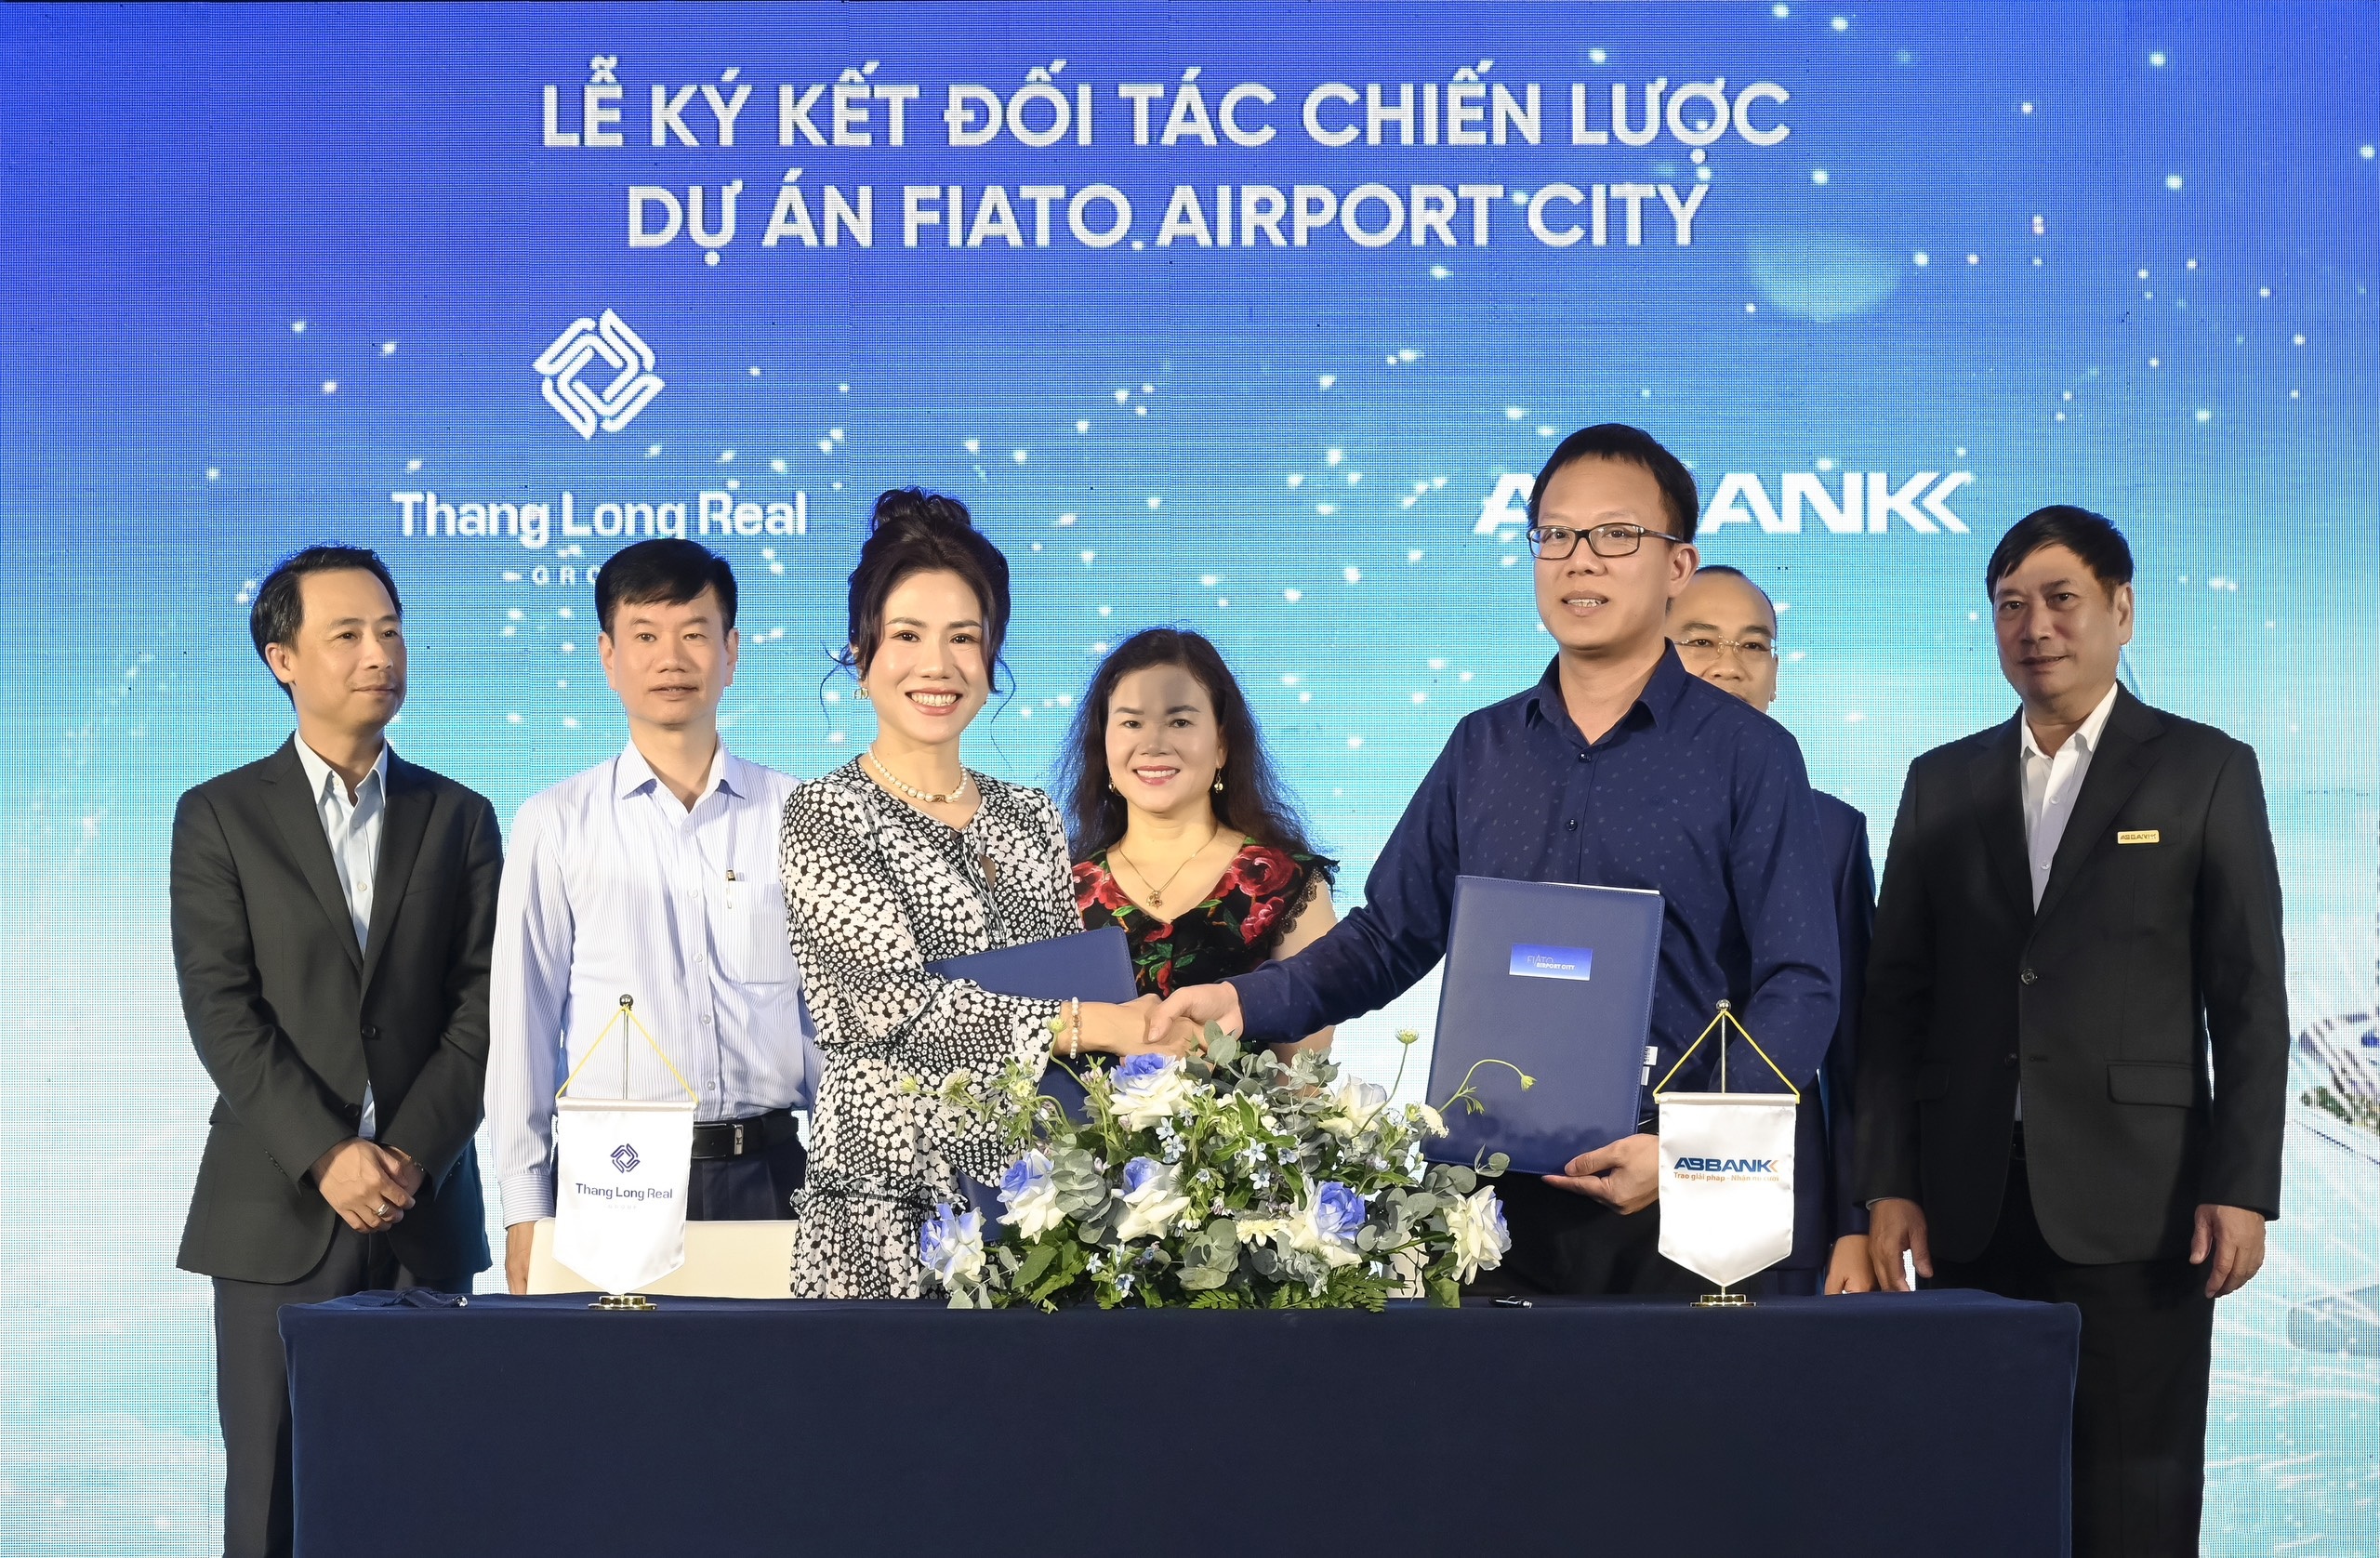 ABBANK và Thang Long Real Group cam kết hợp tác trong quá trình triển khai dự án Fiato Airpot City và sẵn sàng đồng hành trong hoạt động kinh doanh của cả hai bên.